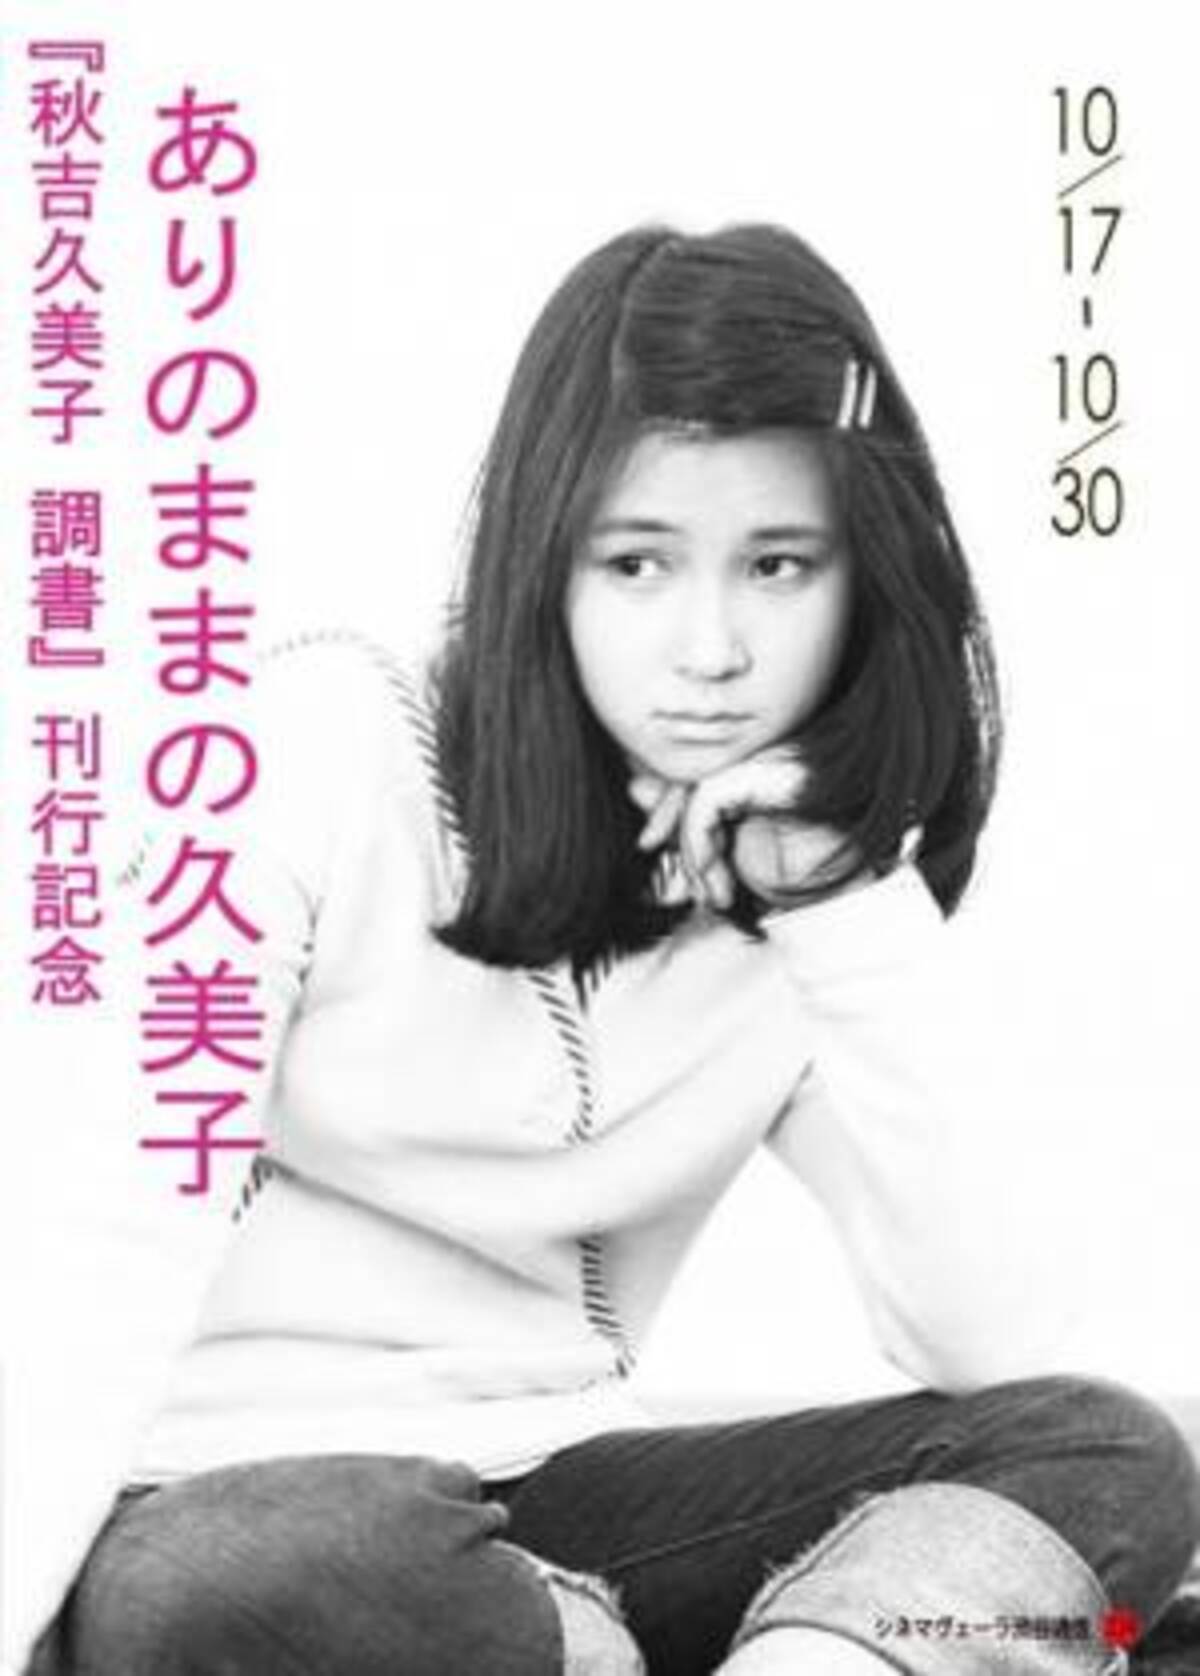 常に異彩を放つ女優 秋吉久美子 この秋 初の自伝出版 特集上映も開催決定 年9月18日 ウーマンエキサイト 1 2